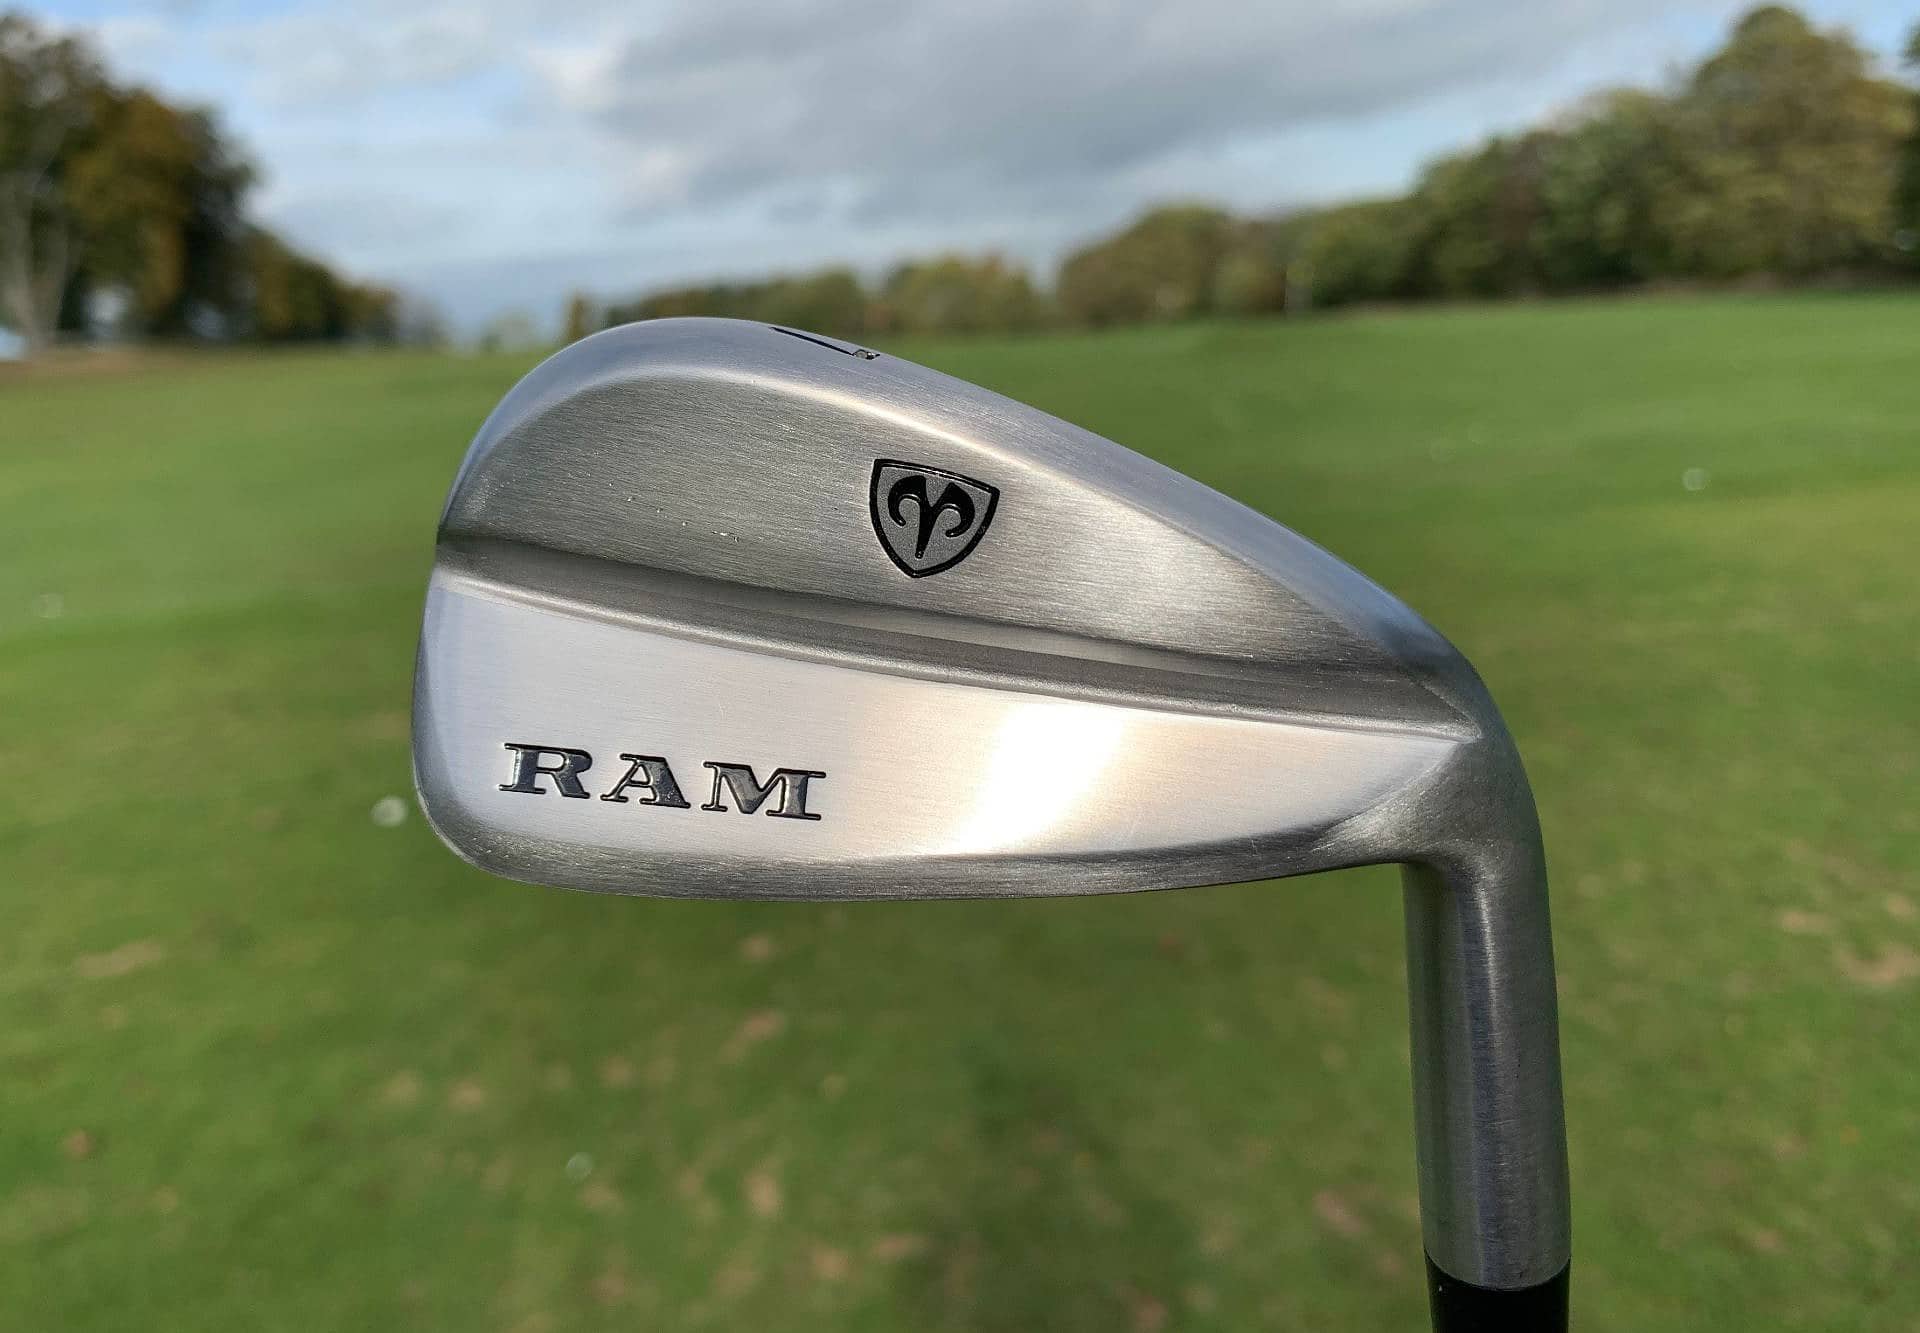 Ram Golf FX77 irons review